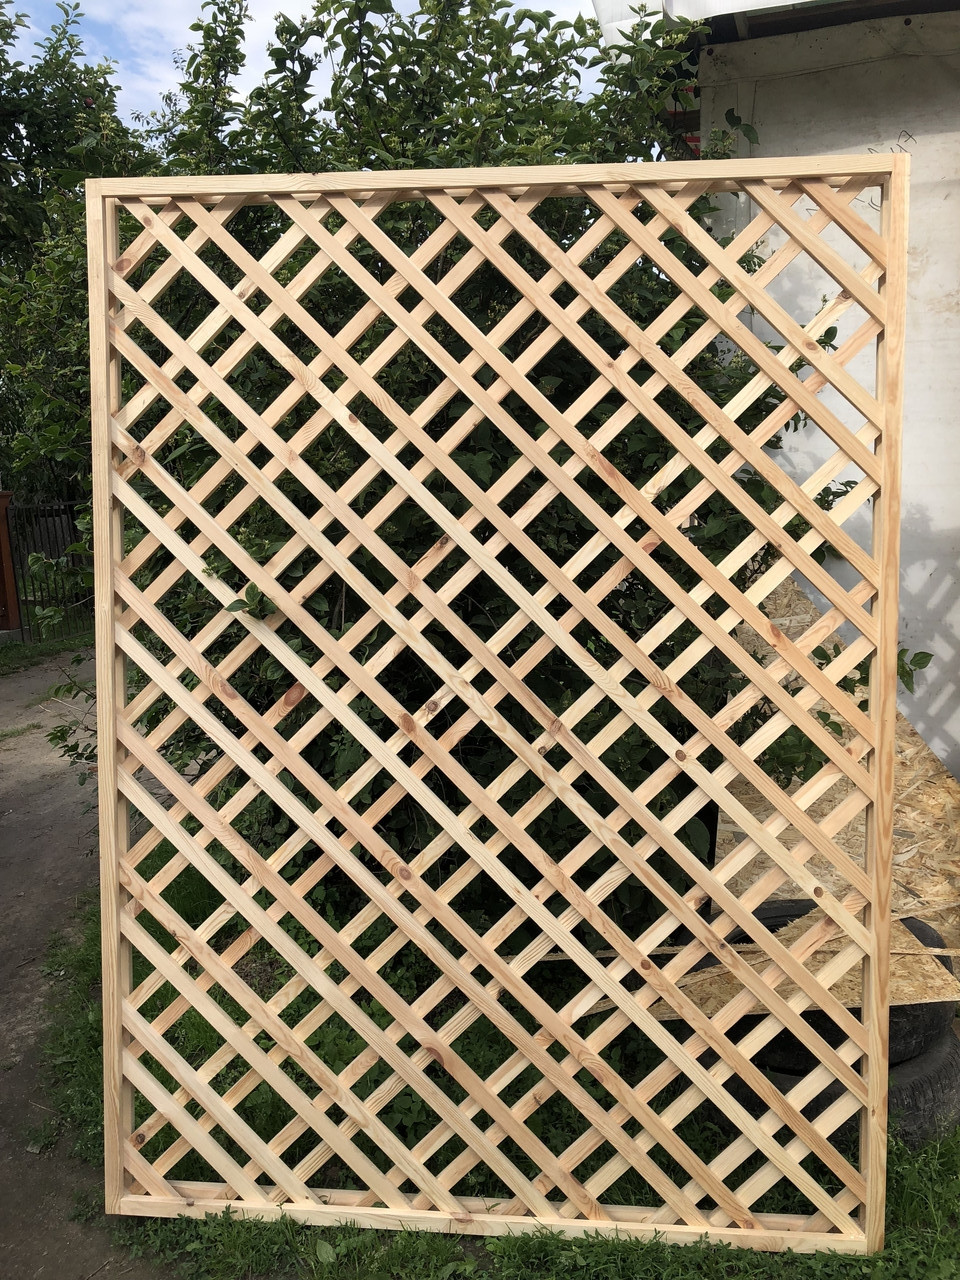 Решетка деревянная ( забор решетчатый, решетка для беседки).